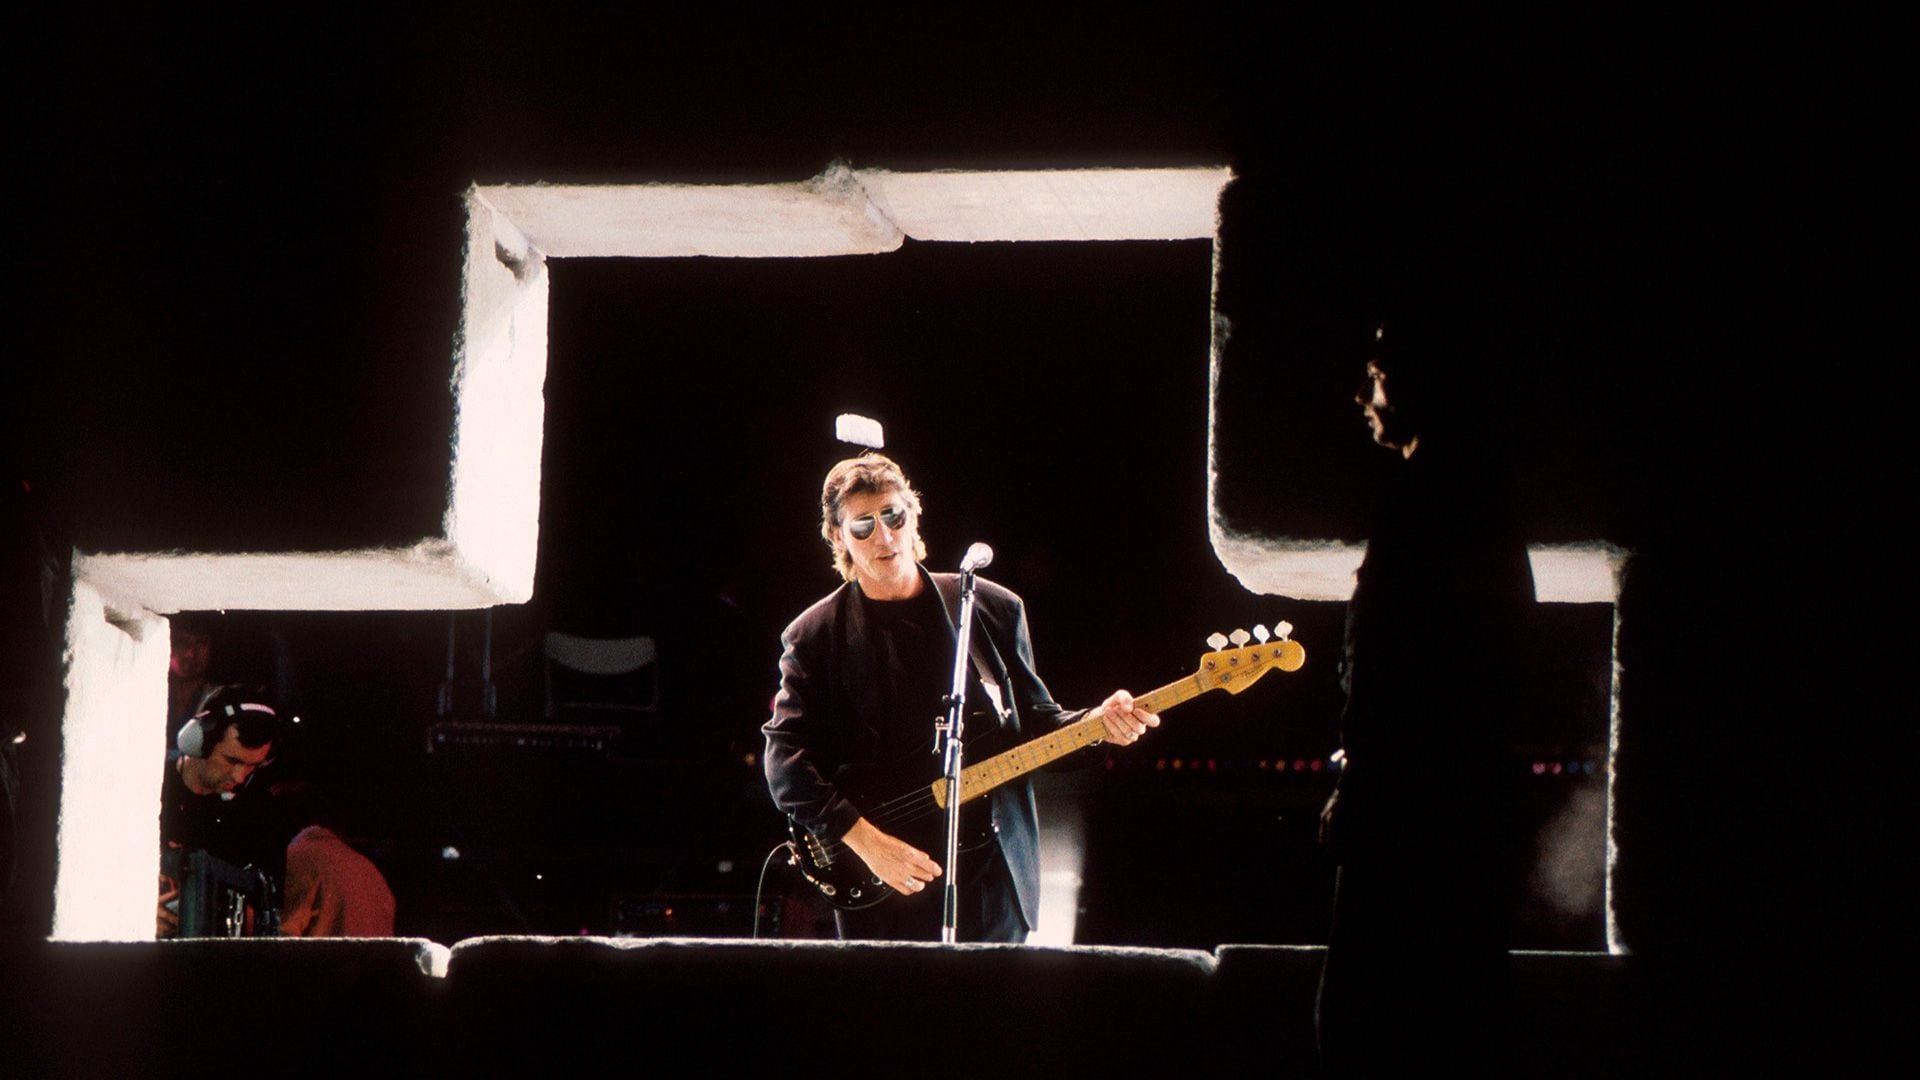 Roger Waters en julio de 1990 hizo The Wall en Berlín. fue una actuación memorable transmitida a más de 50 países  (Photo by Michael Putland/Getty Images)